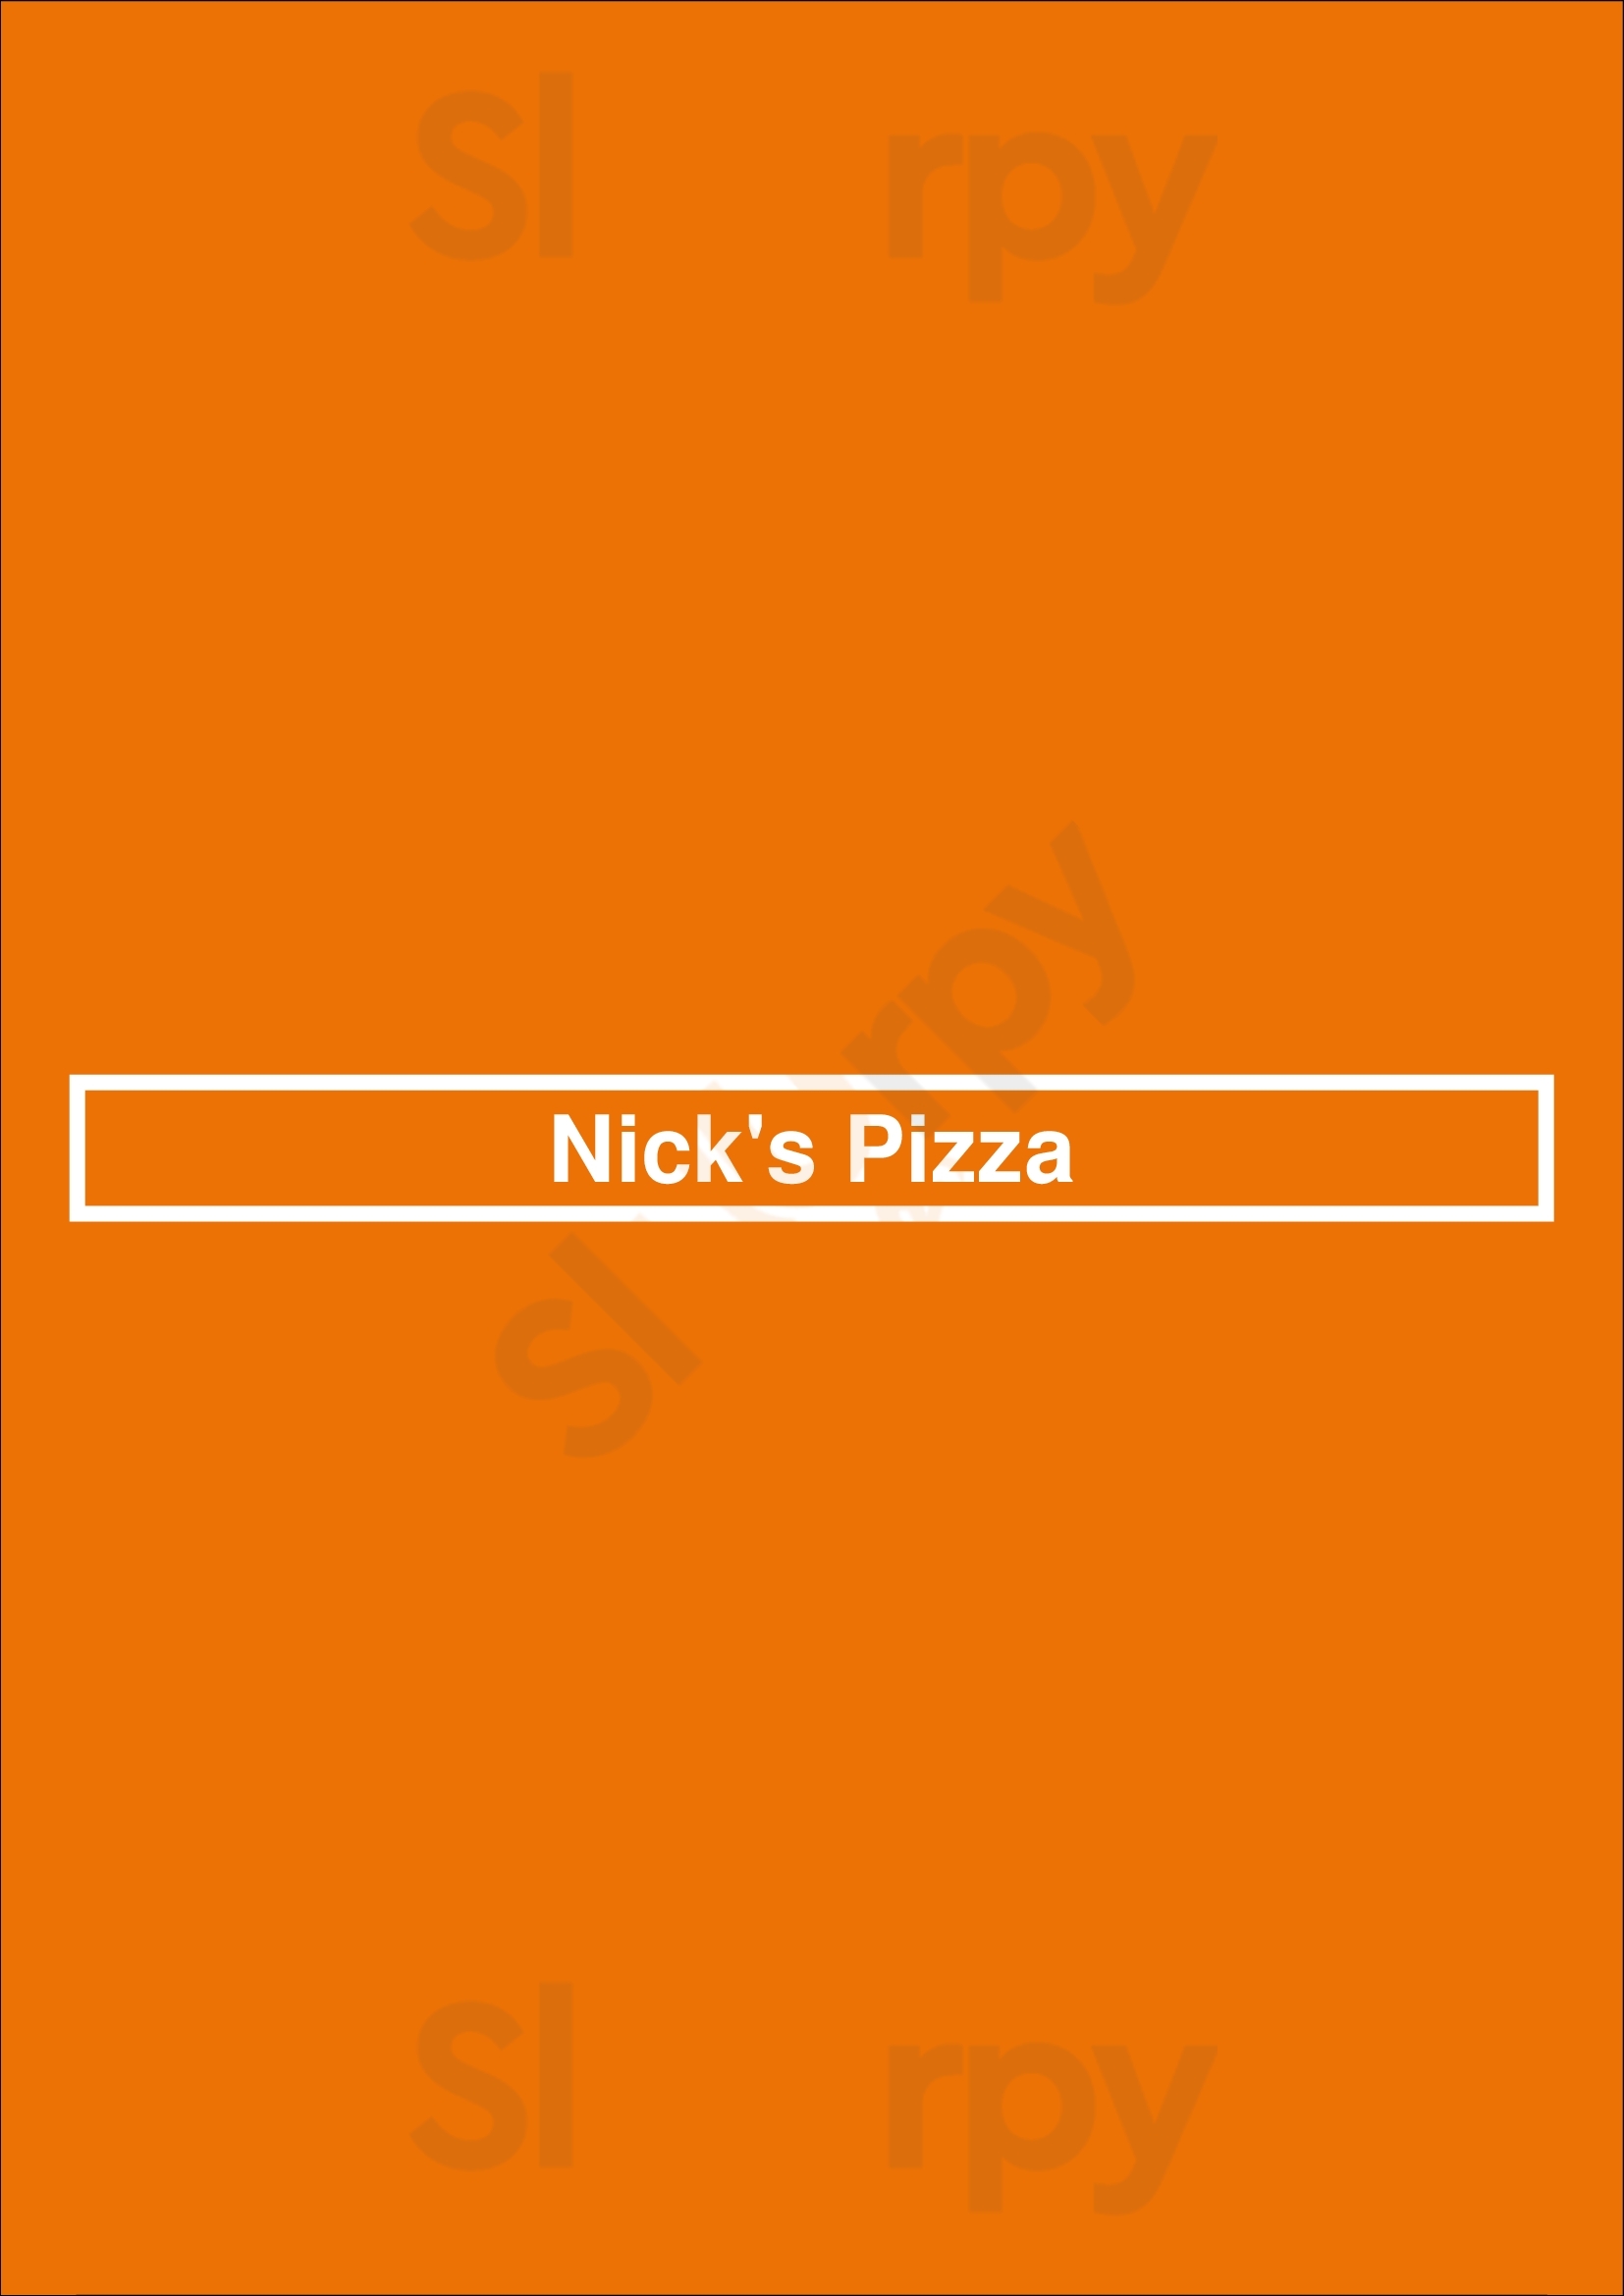 Nick's Pizza Los Angeles Menu - 1